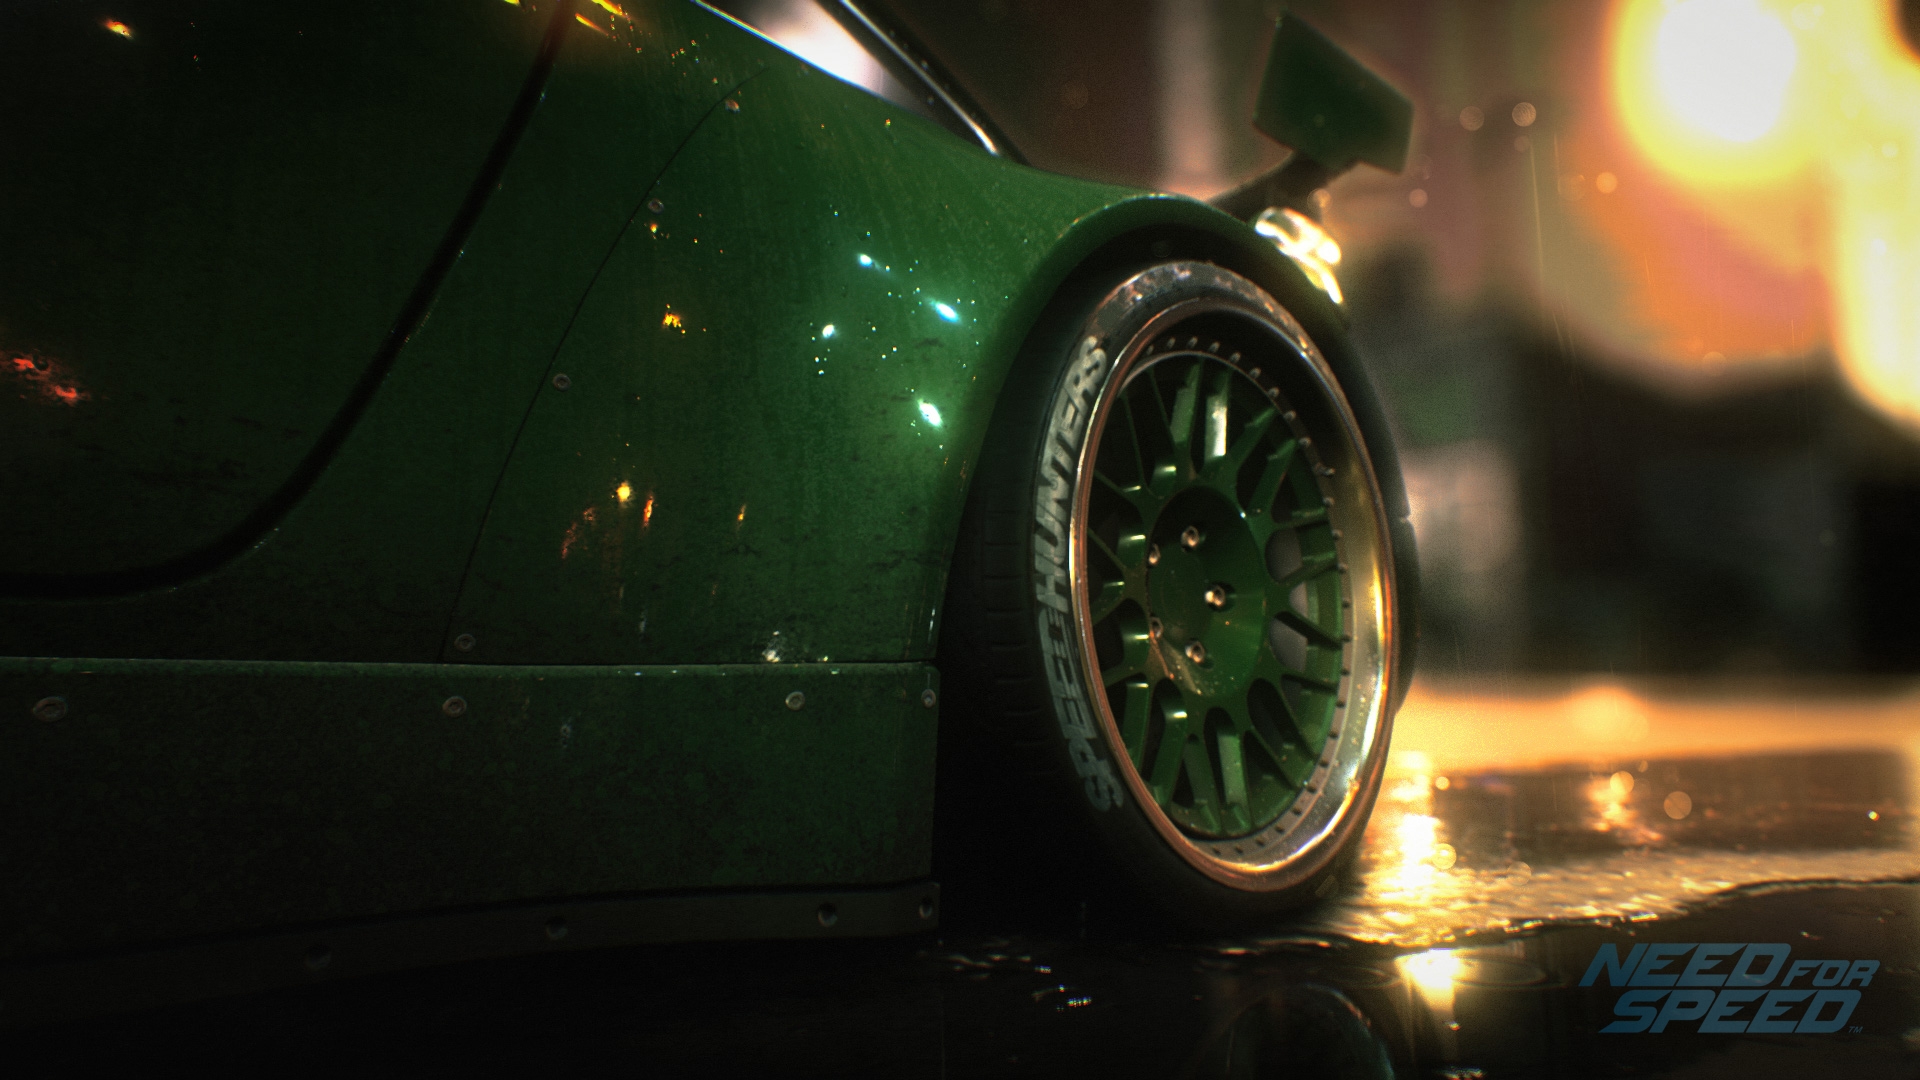 Скриншот из игры Need for Speed (2015) под номером 9